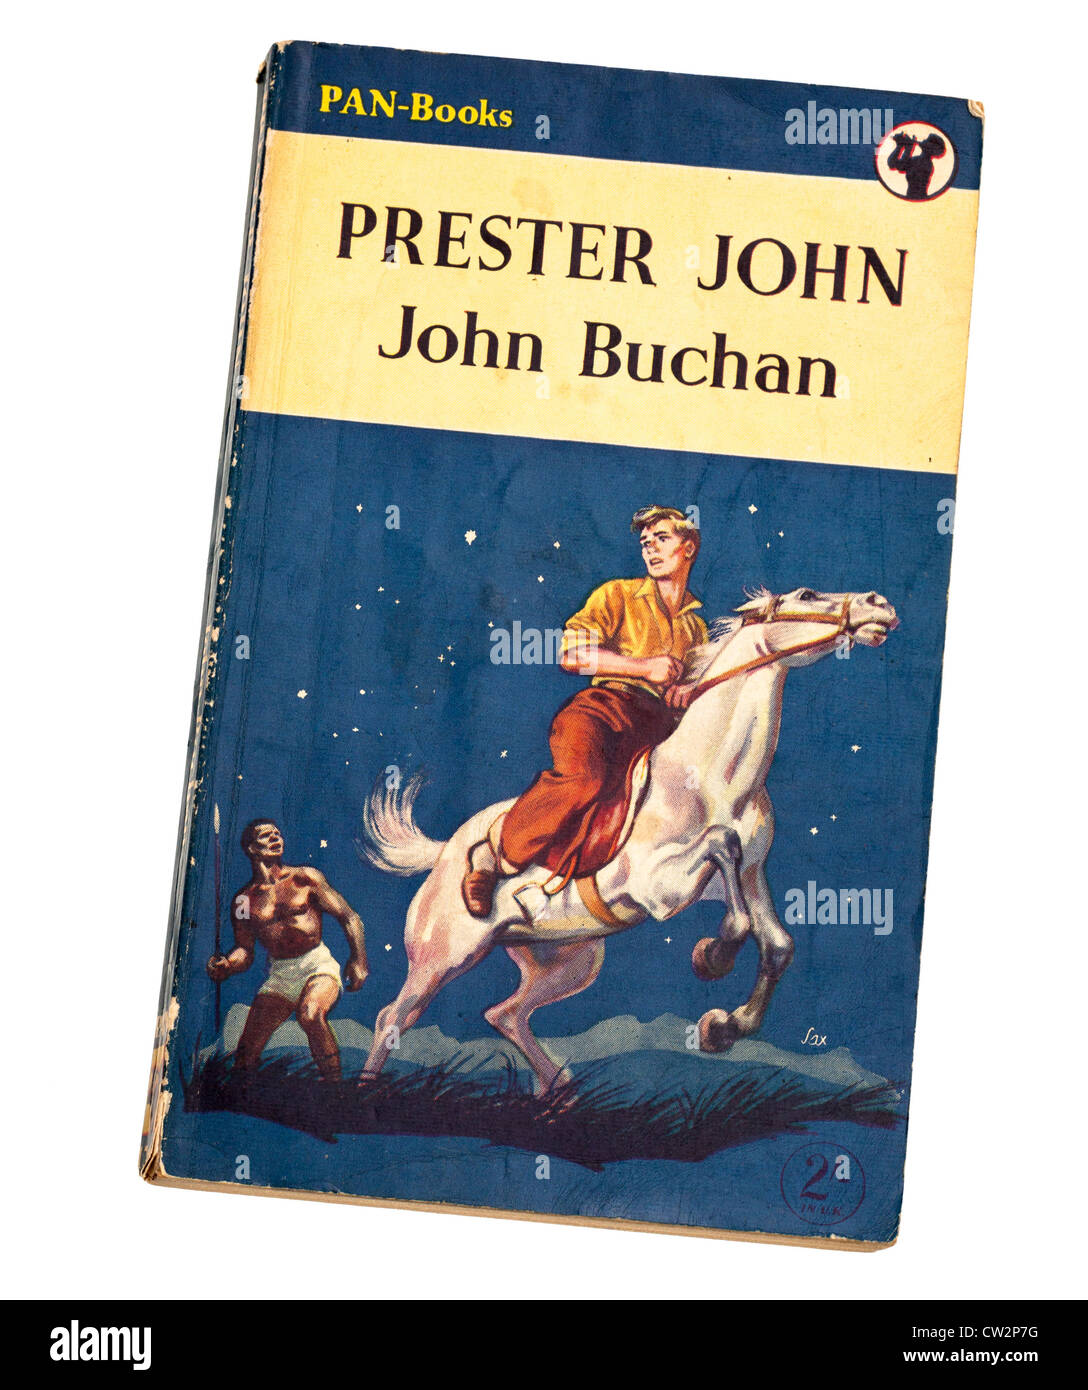 Klassische Kinder Abenteuer Märchenbuch Prester John von John Buchan von Pan veröffentlicht Stockfoto